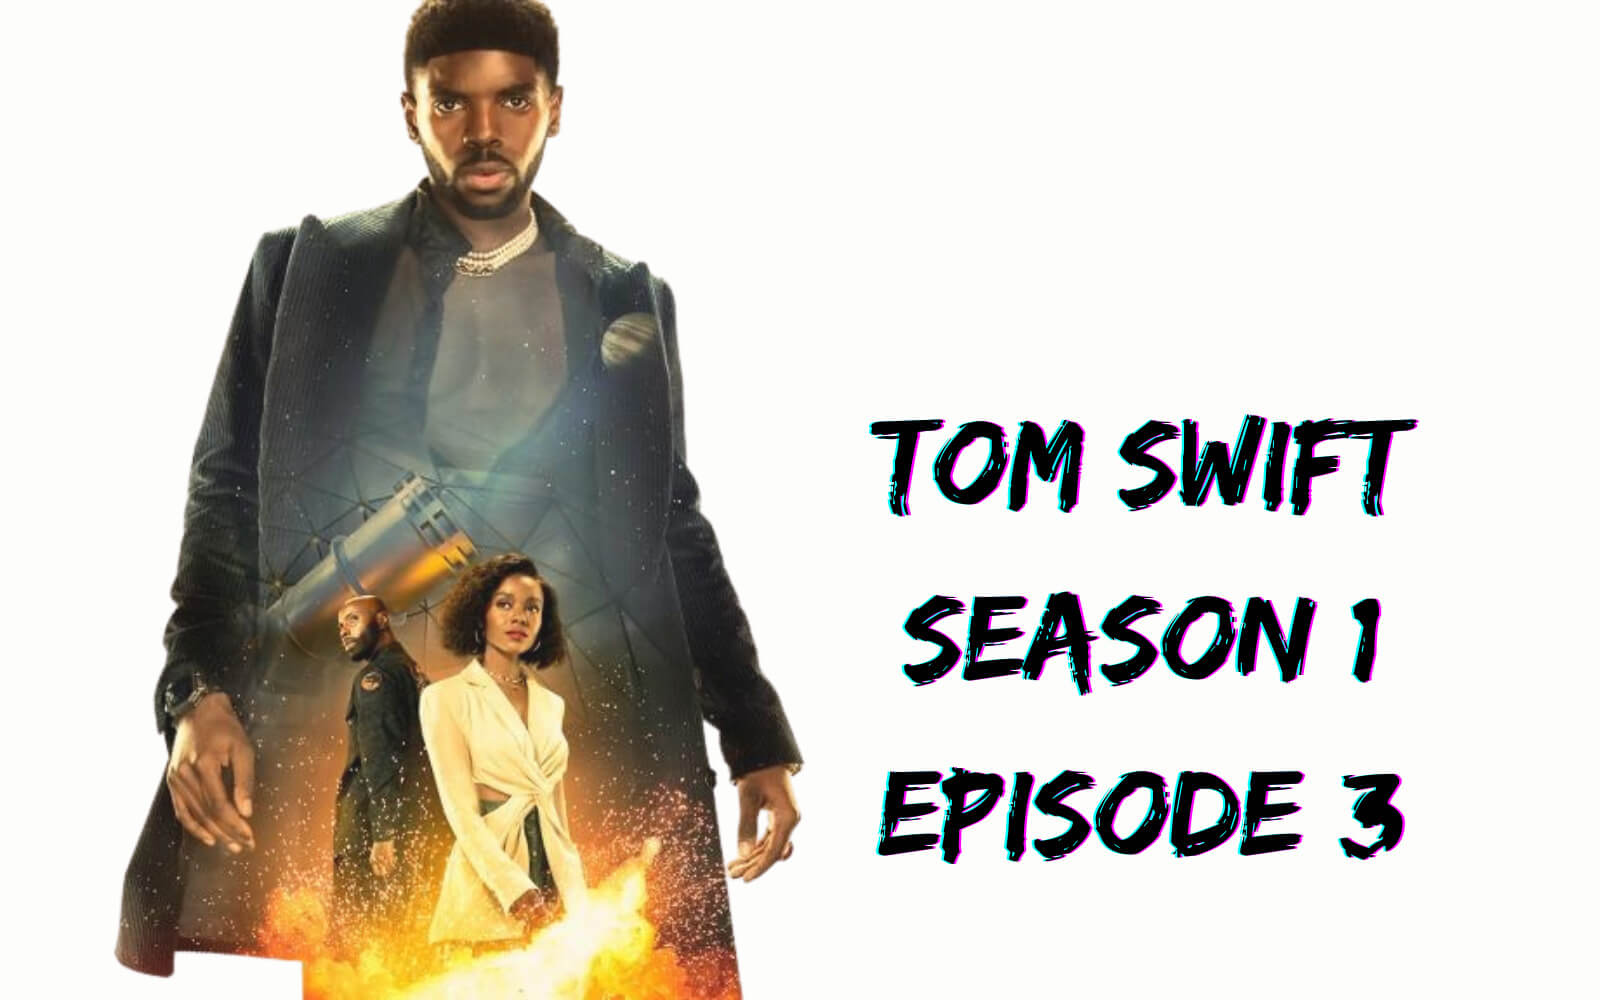 Tom Swift Season 1 Episode 3 release date